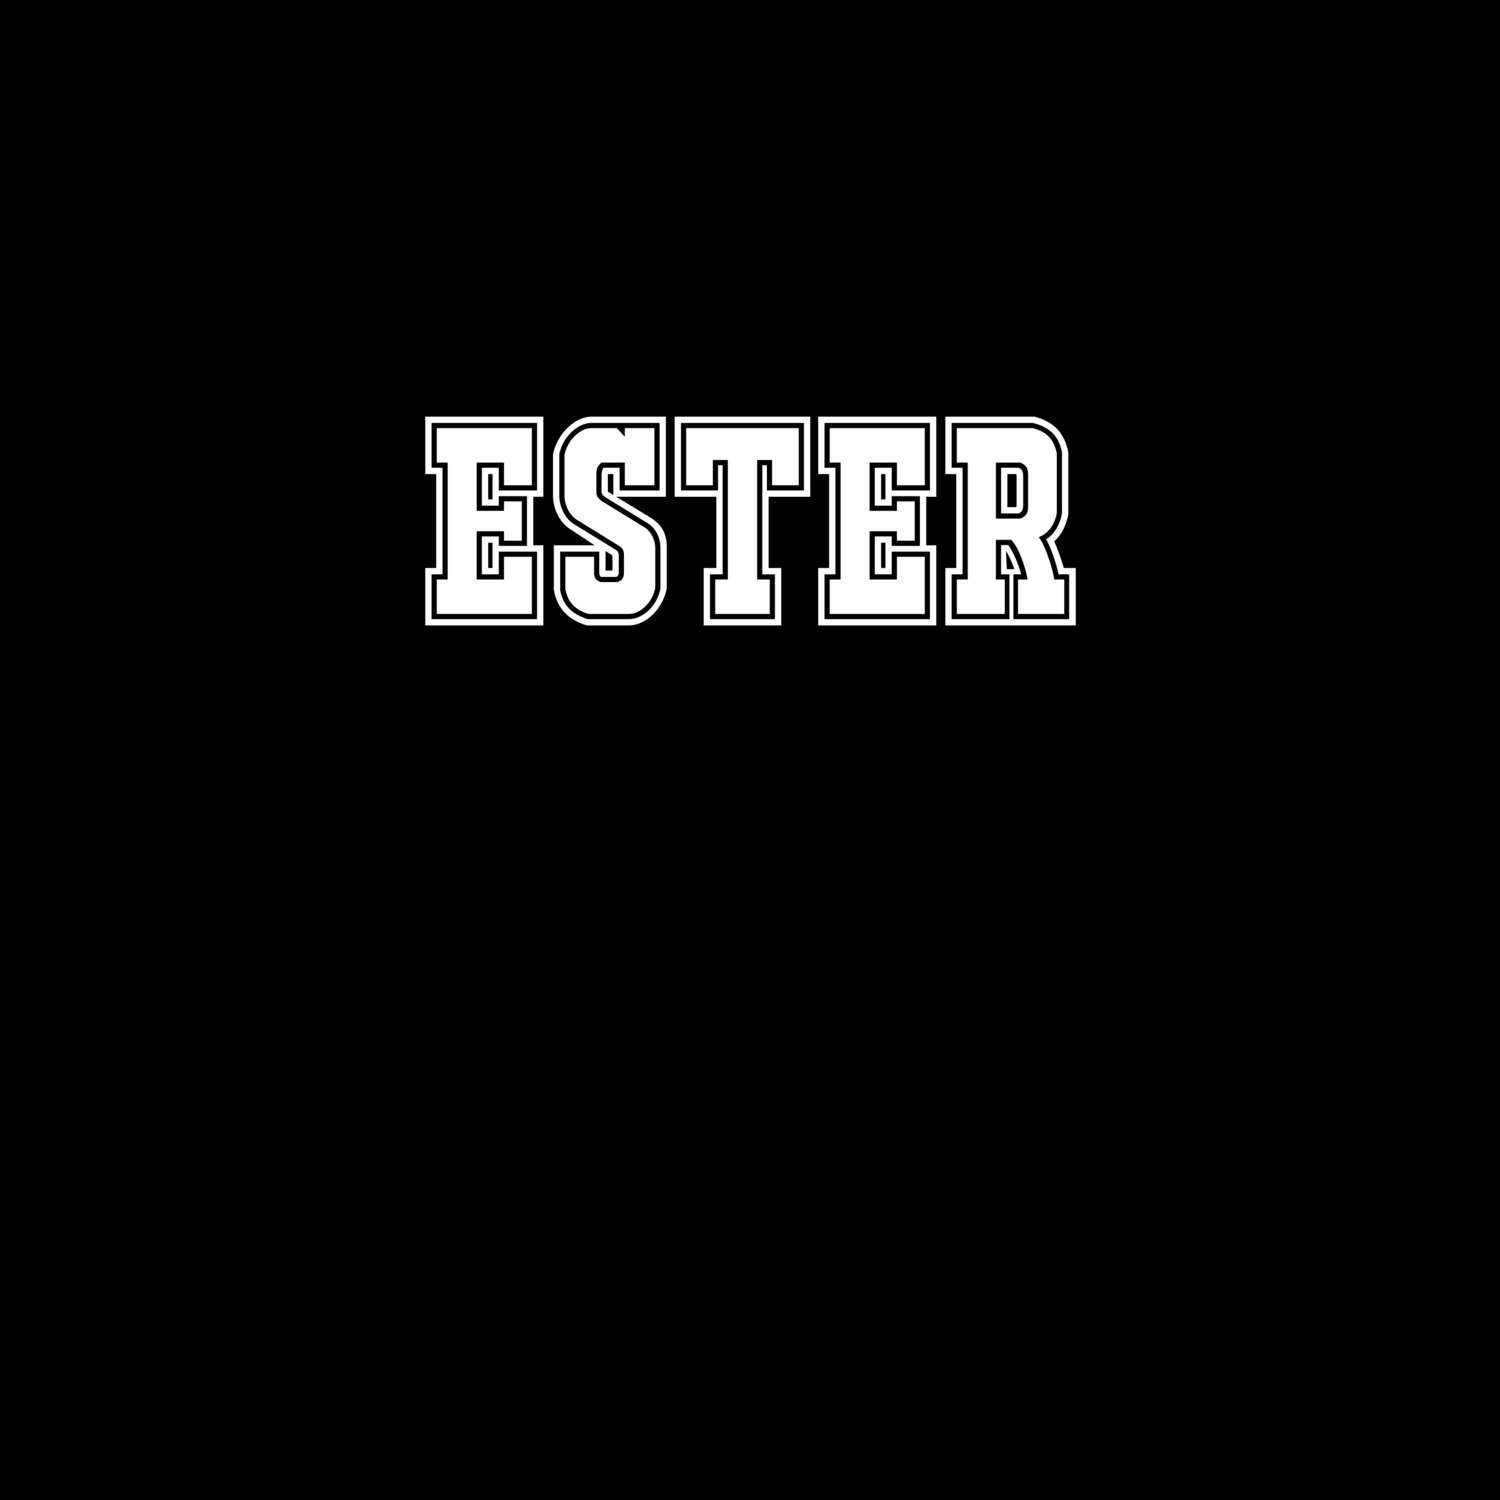 Ester T-Shirt »Classic«